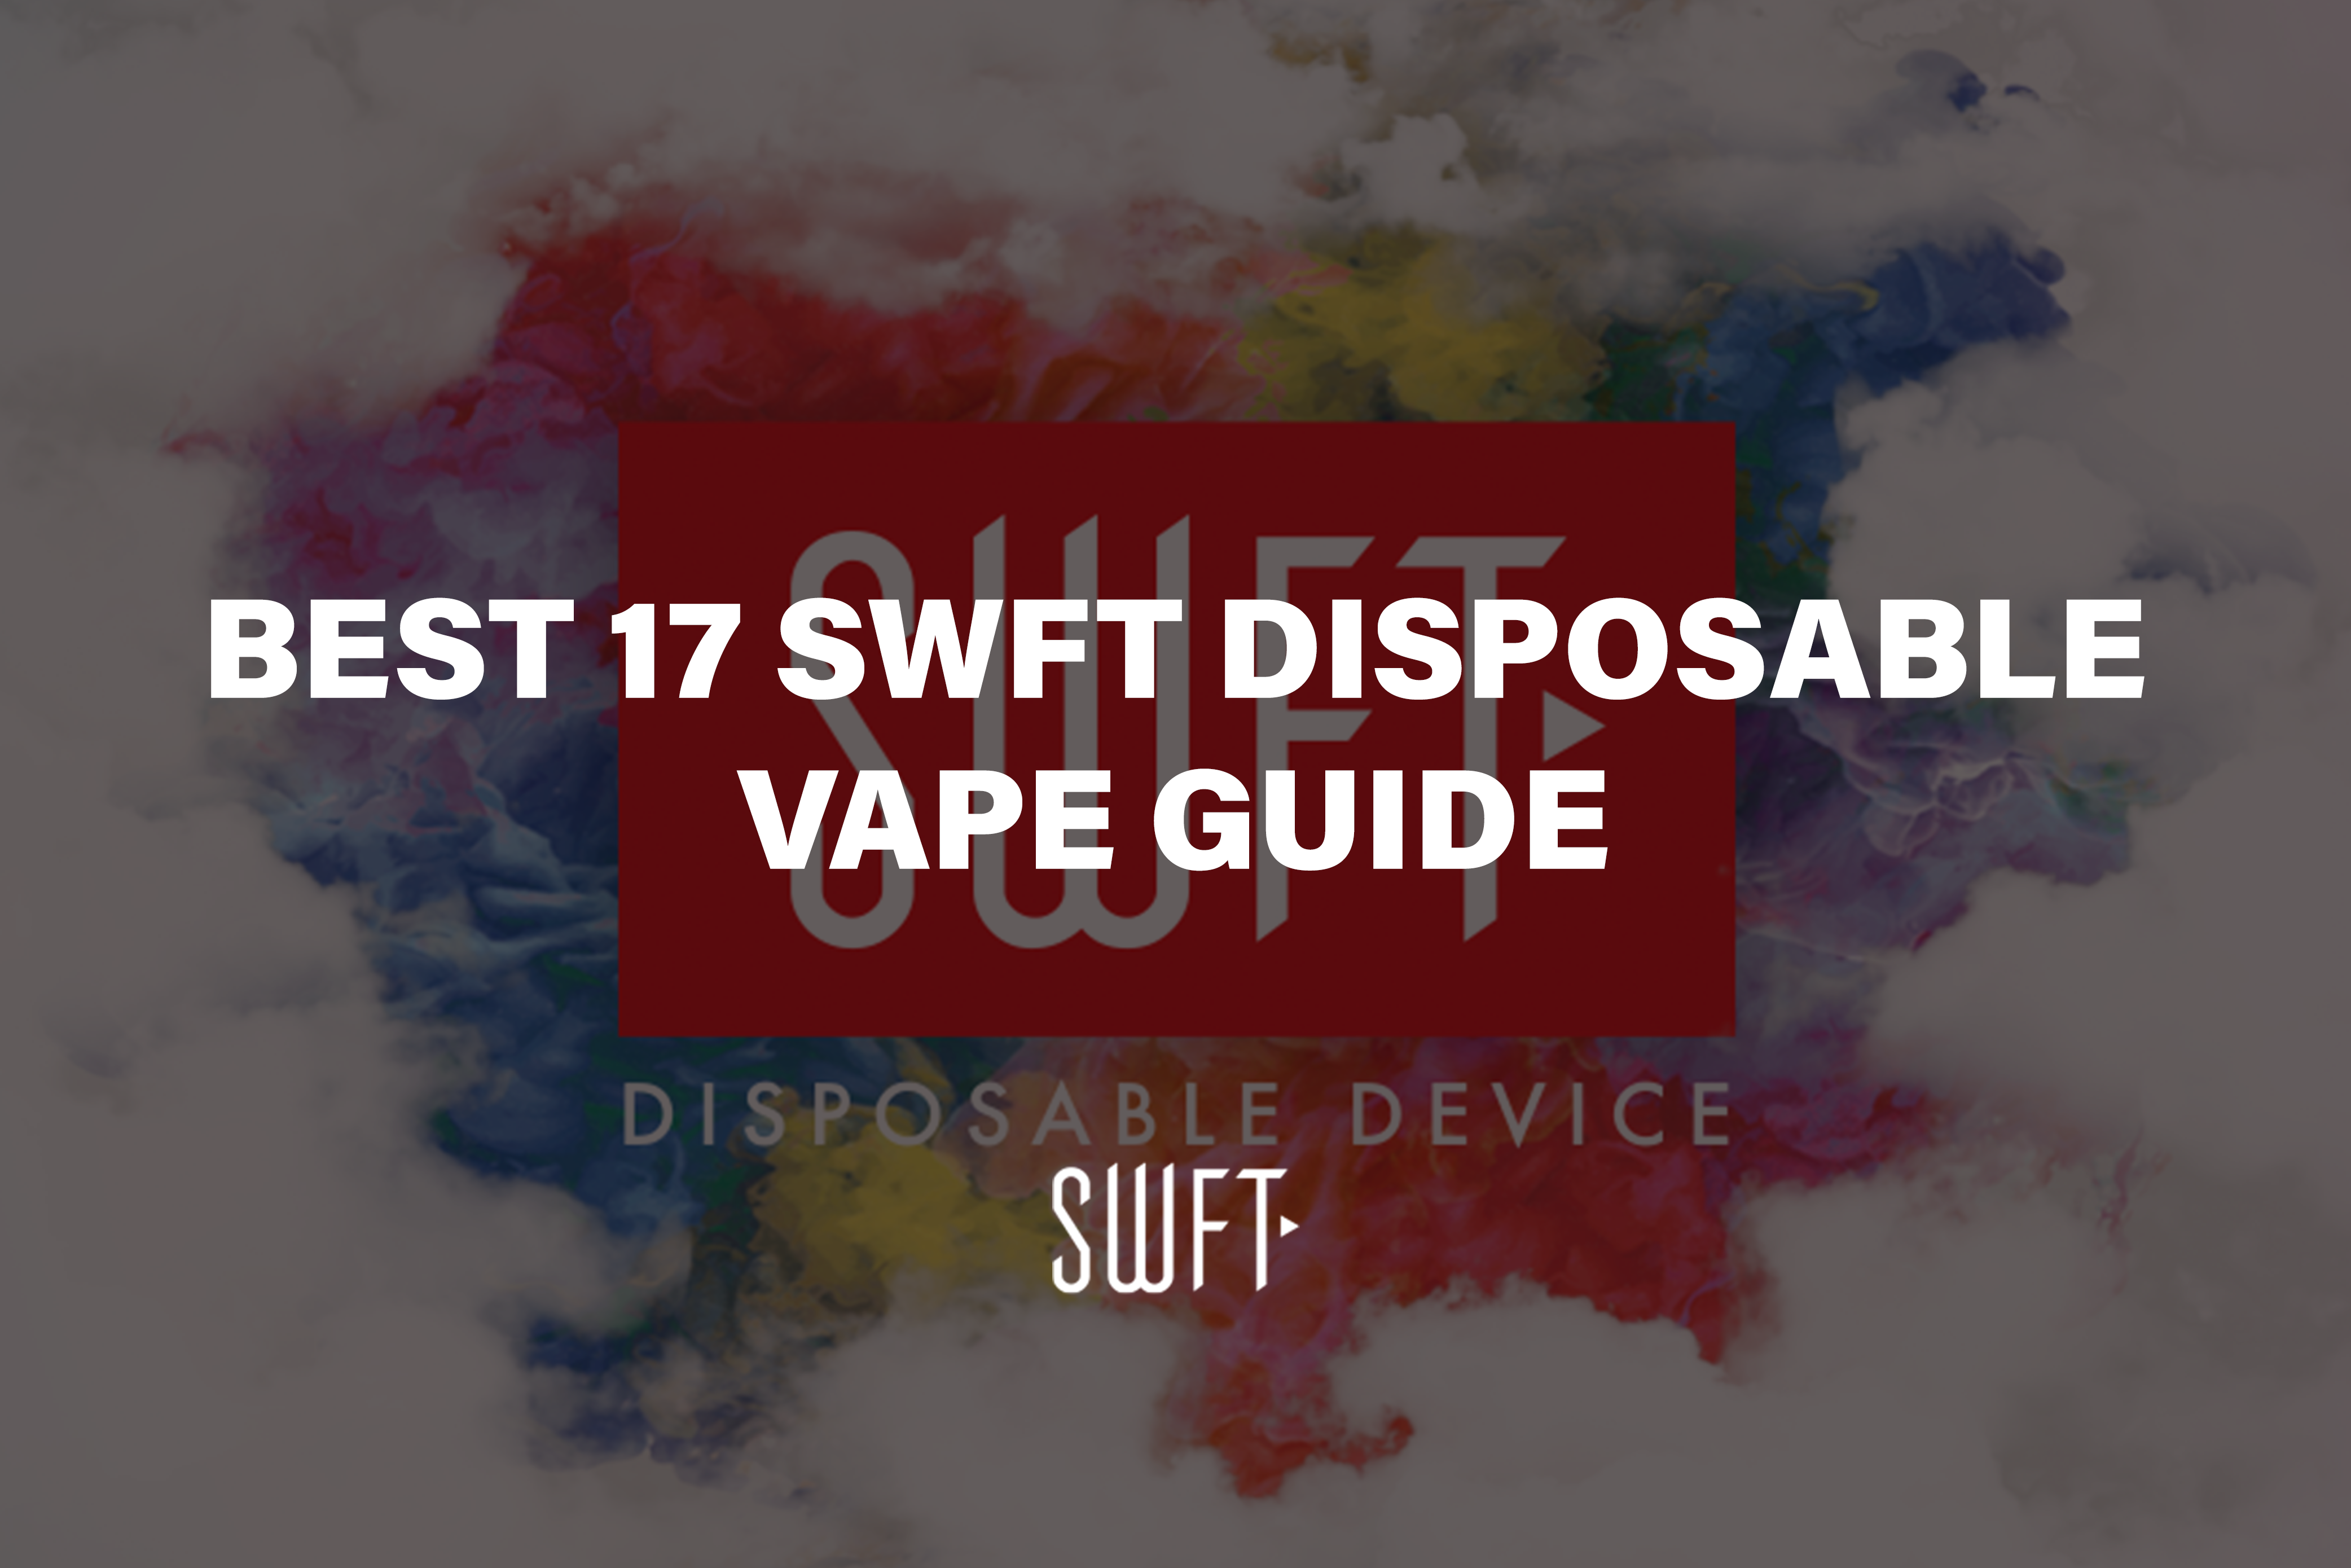 Best 17 SWFT Disposable Vape Guide